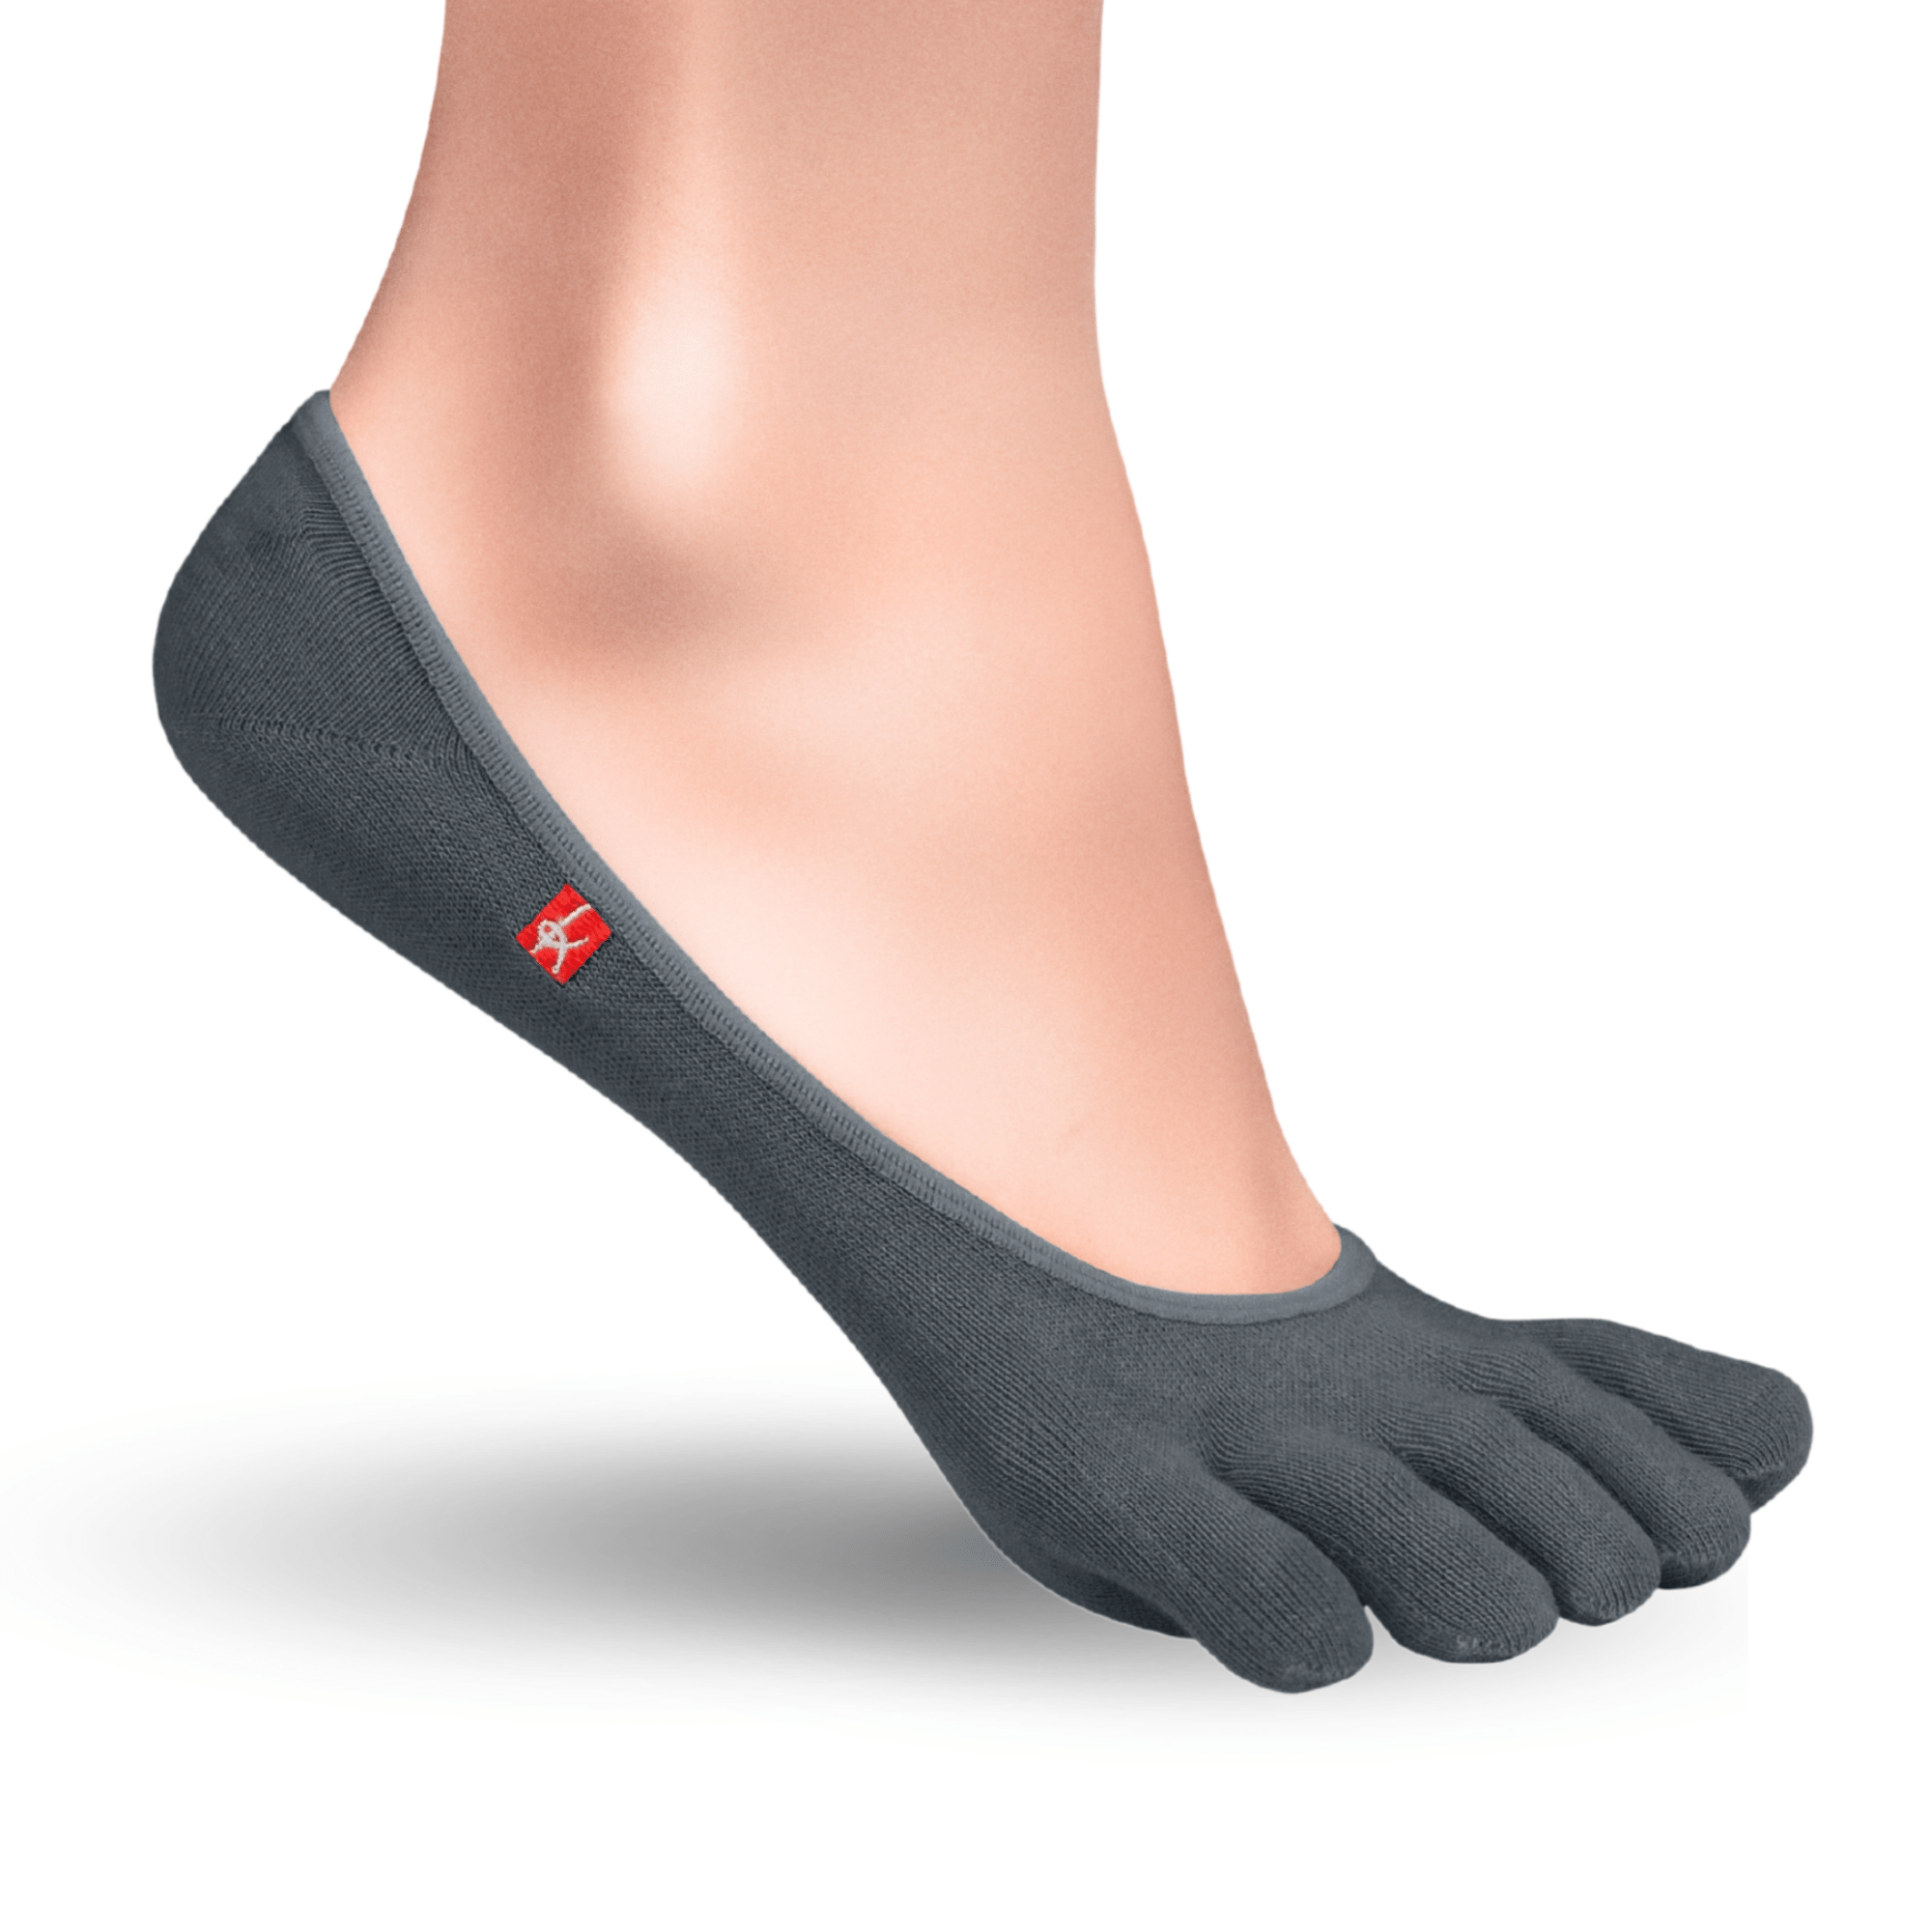 Knitido Zero Coolmax toe socks ladies toe socks in gray